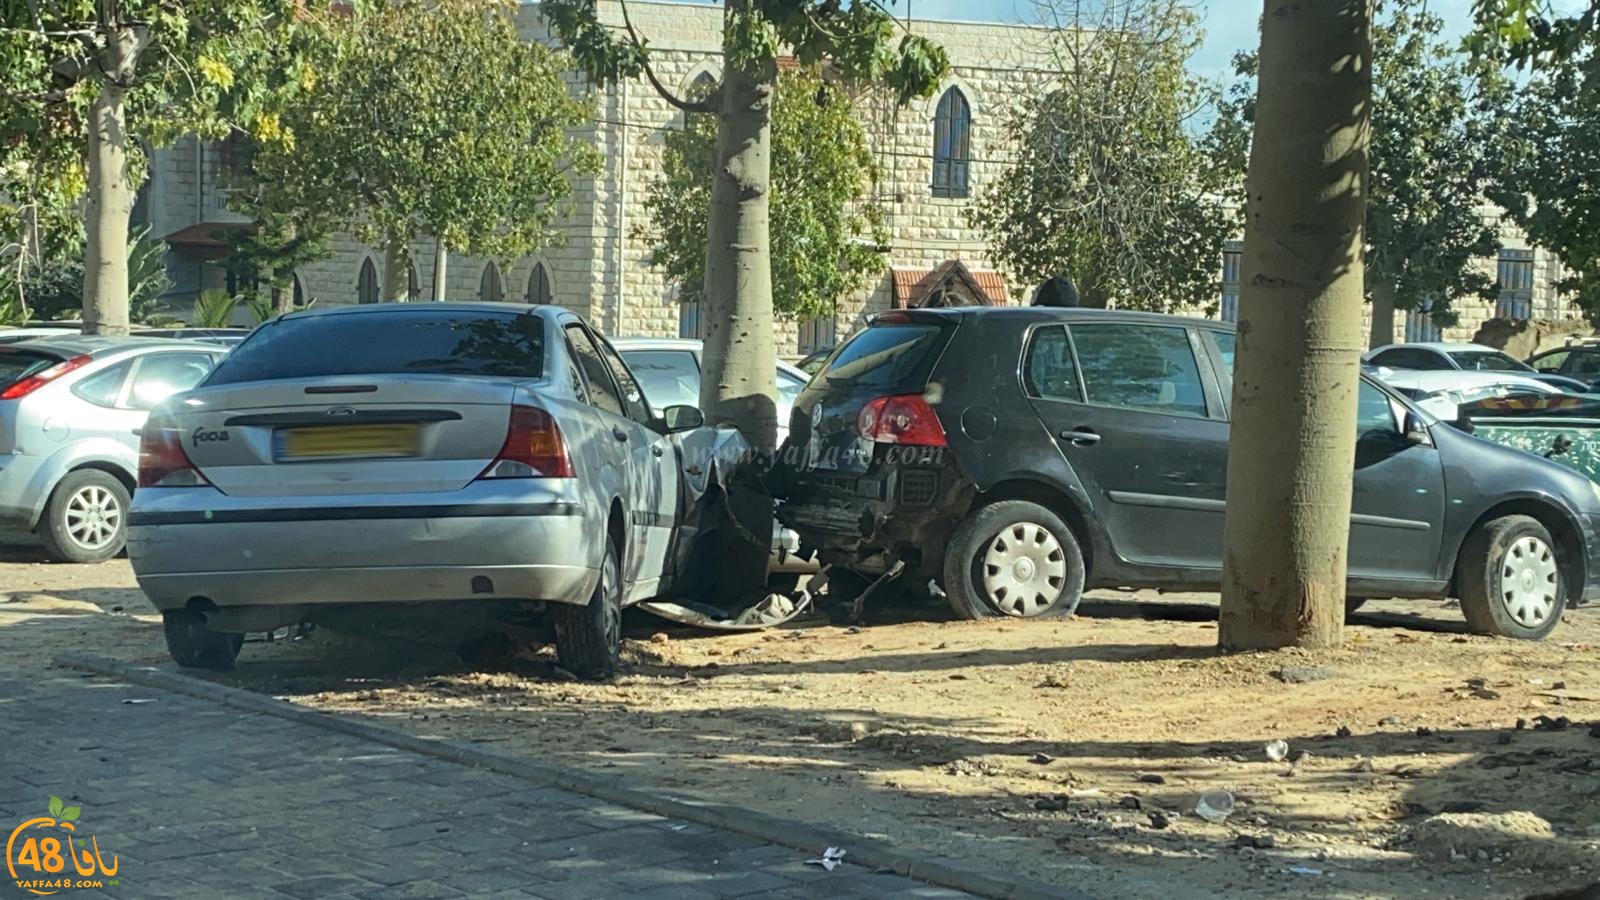   حادث طرق بين مركبتين في يافا دون اصابات